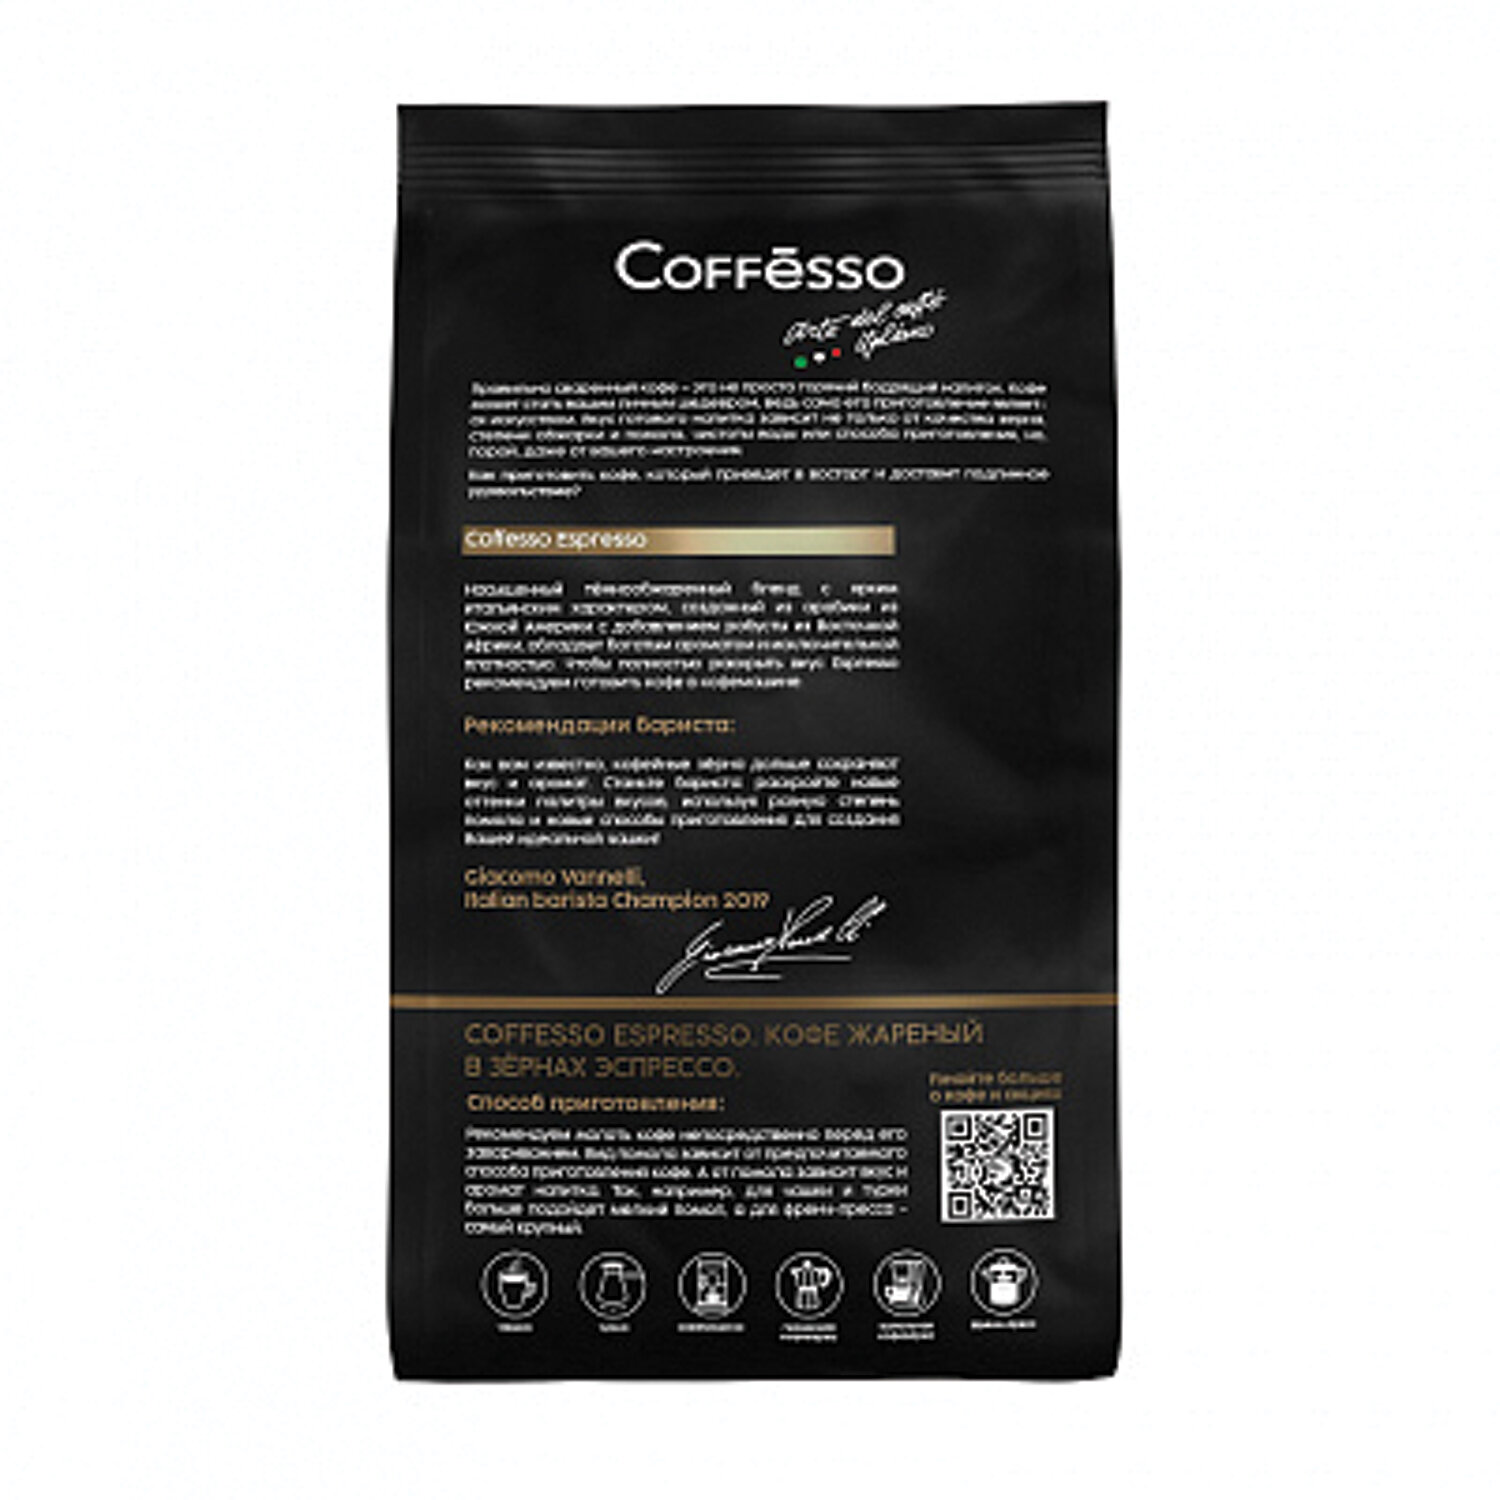 Coffesso Espresso в зернах. Coffesso Espresso 1кг описание. TC professional Espresso 1000g x 6 (Германия). Кофе Кофессо с тигром в зернах отзывы цена.